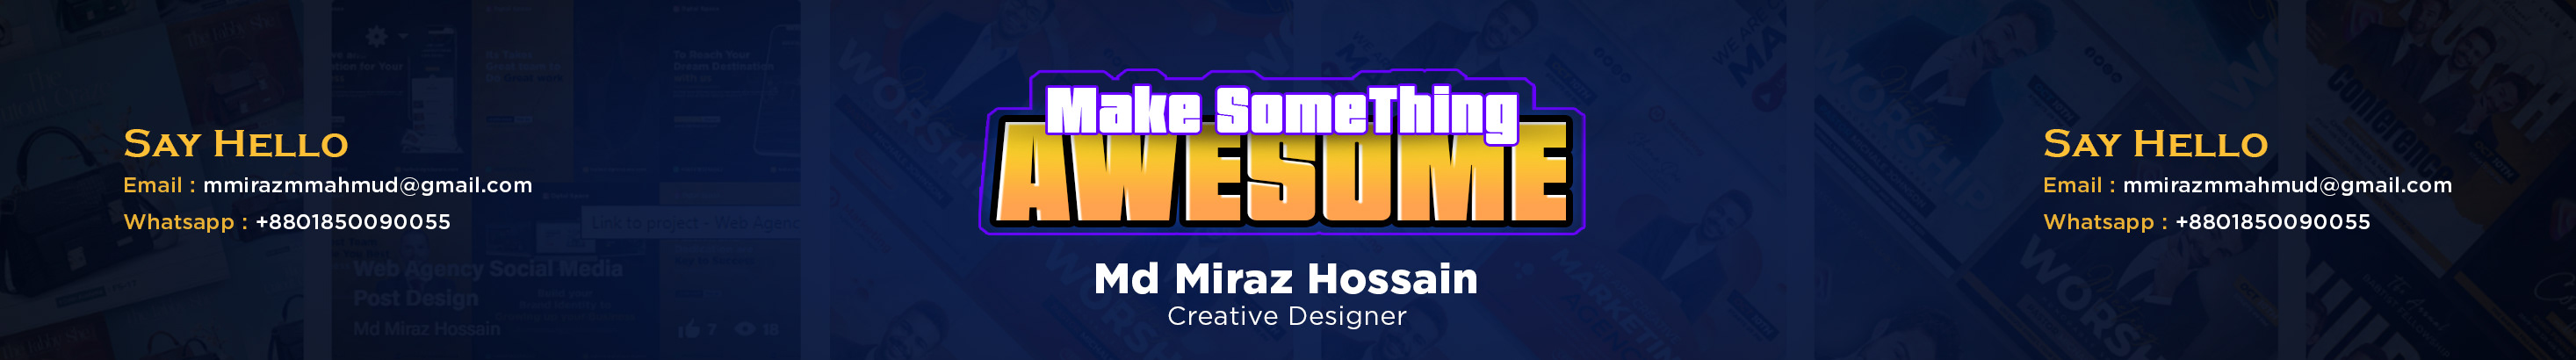 Banner profilu uživatele Md Miraz Hossain